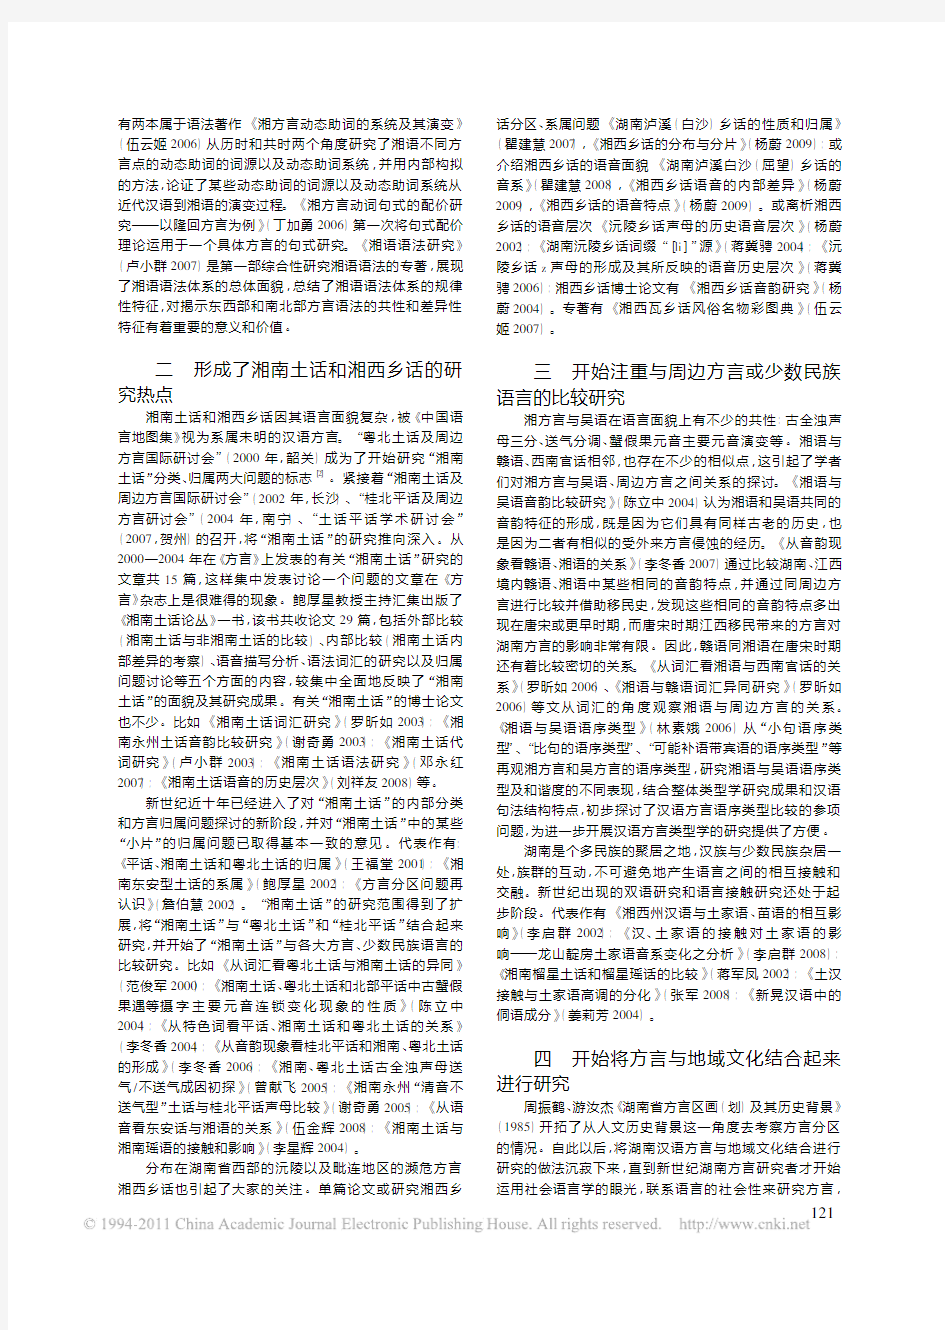 新世纪十年湖南汉语方言研究新动向